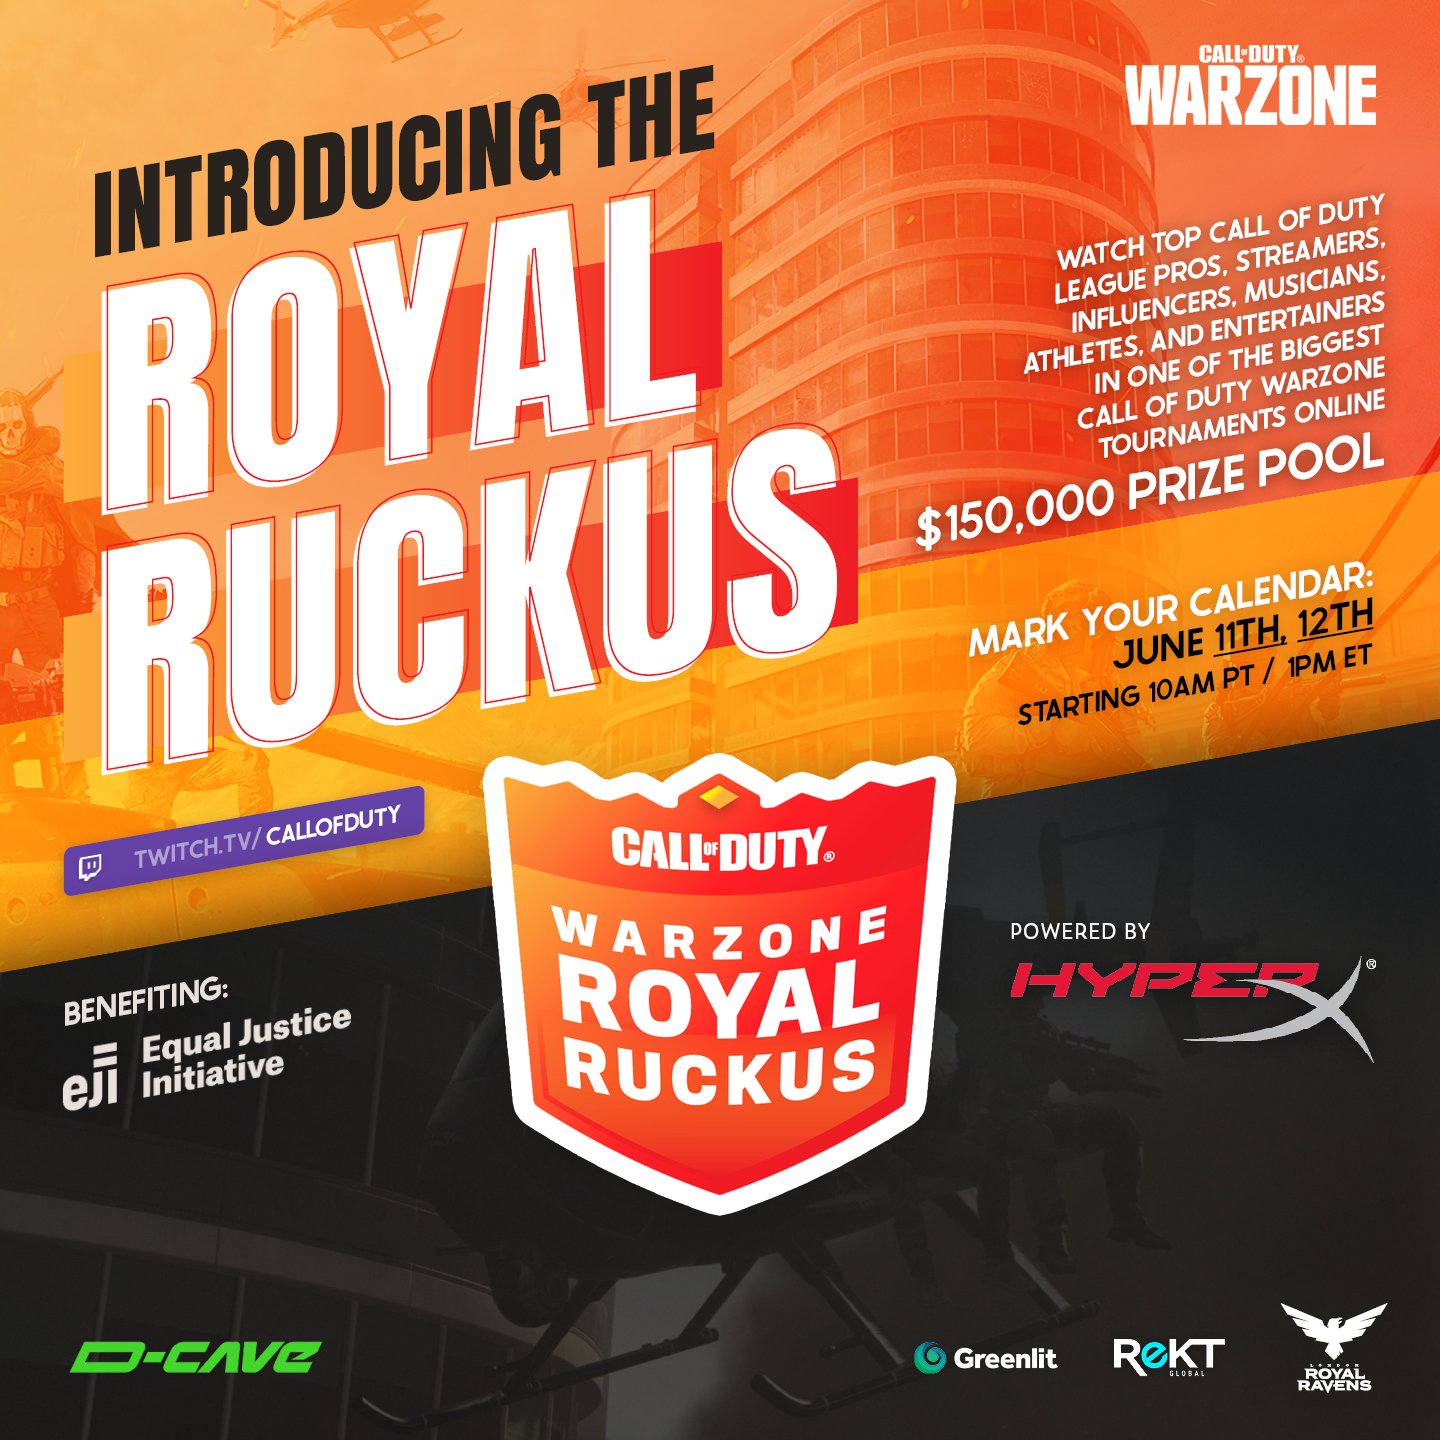 Warzone Royal Ruckus